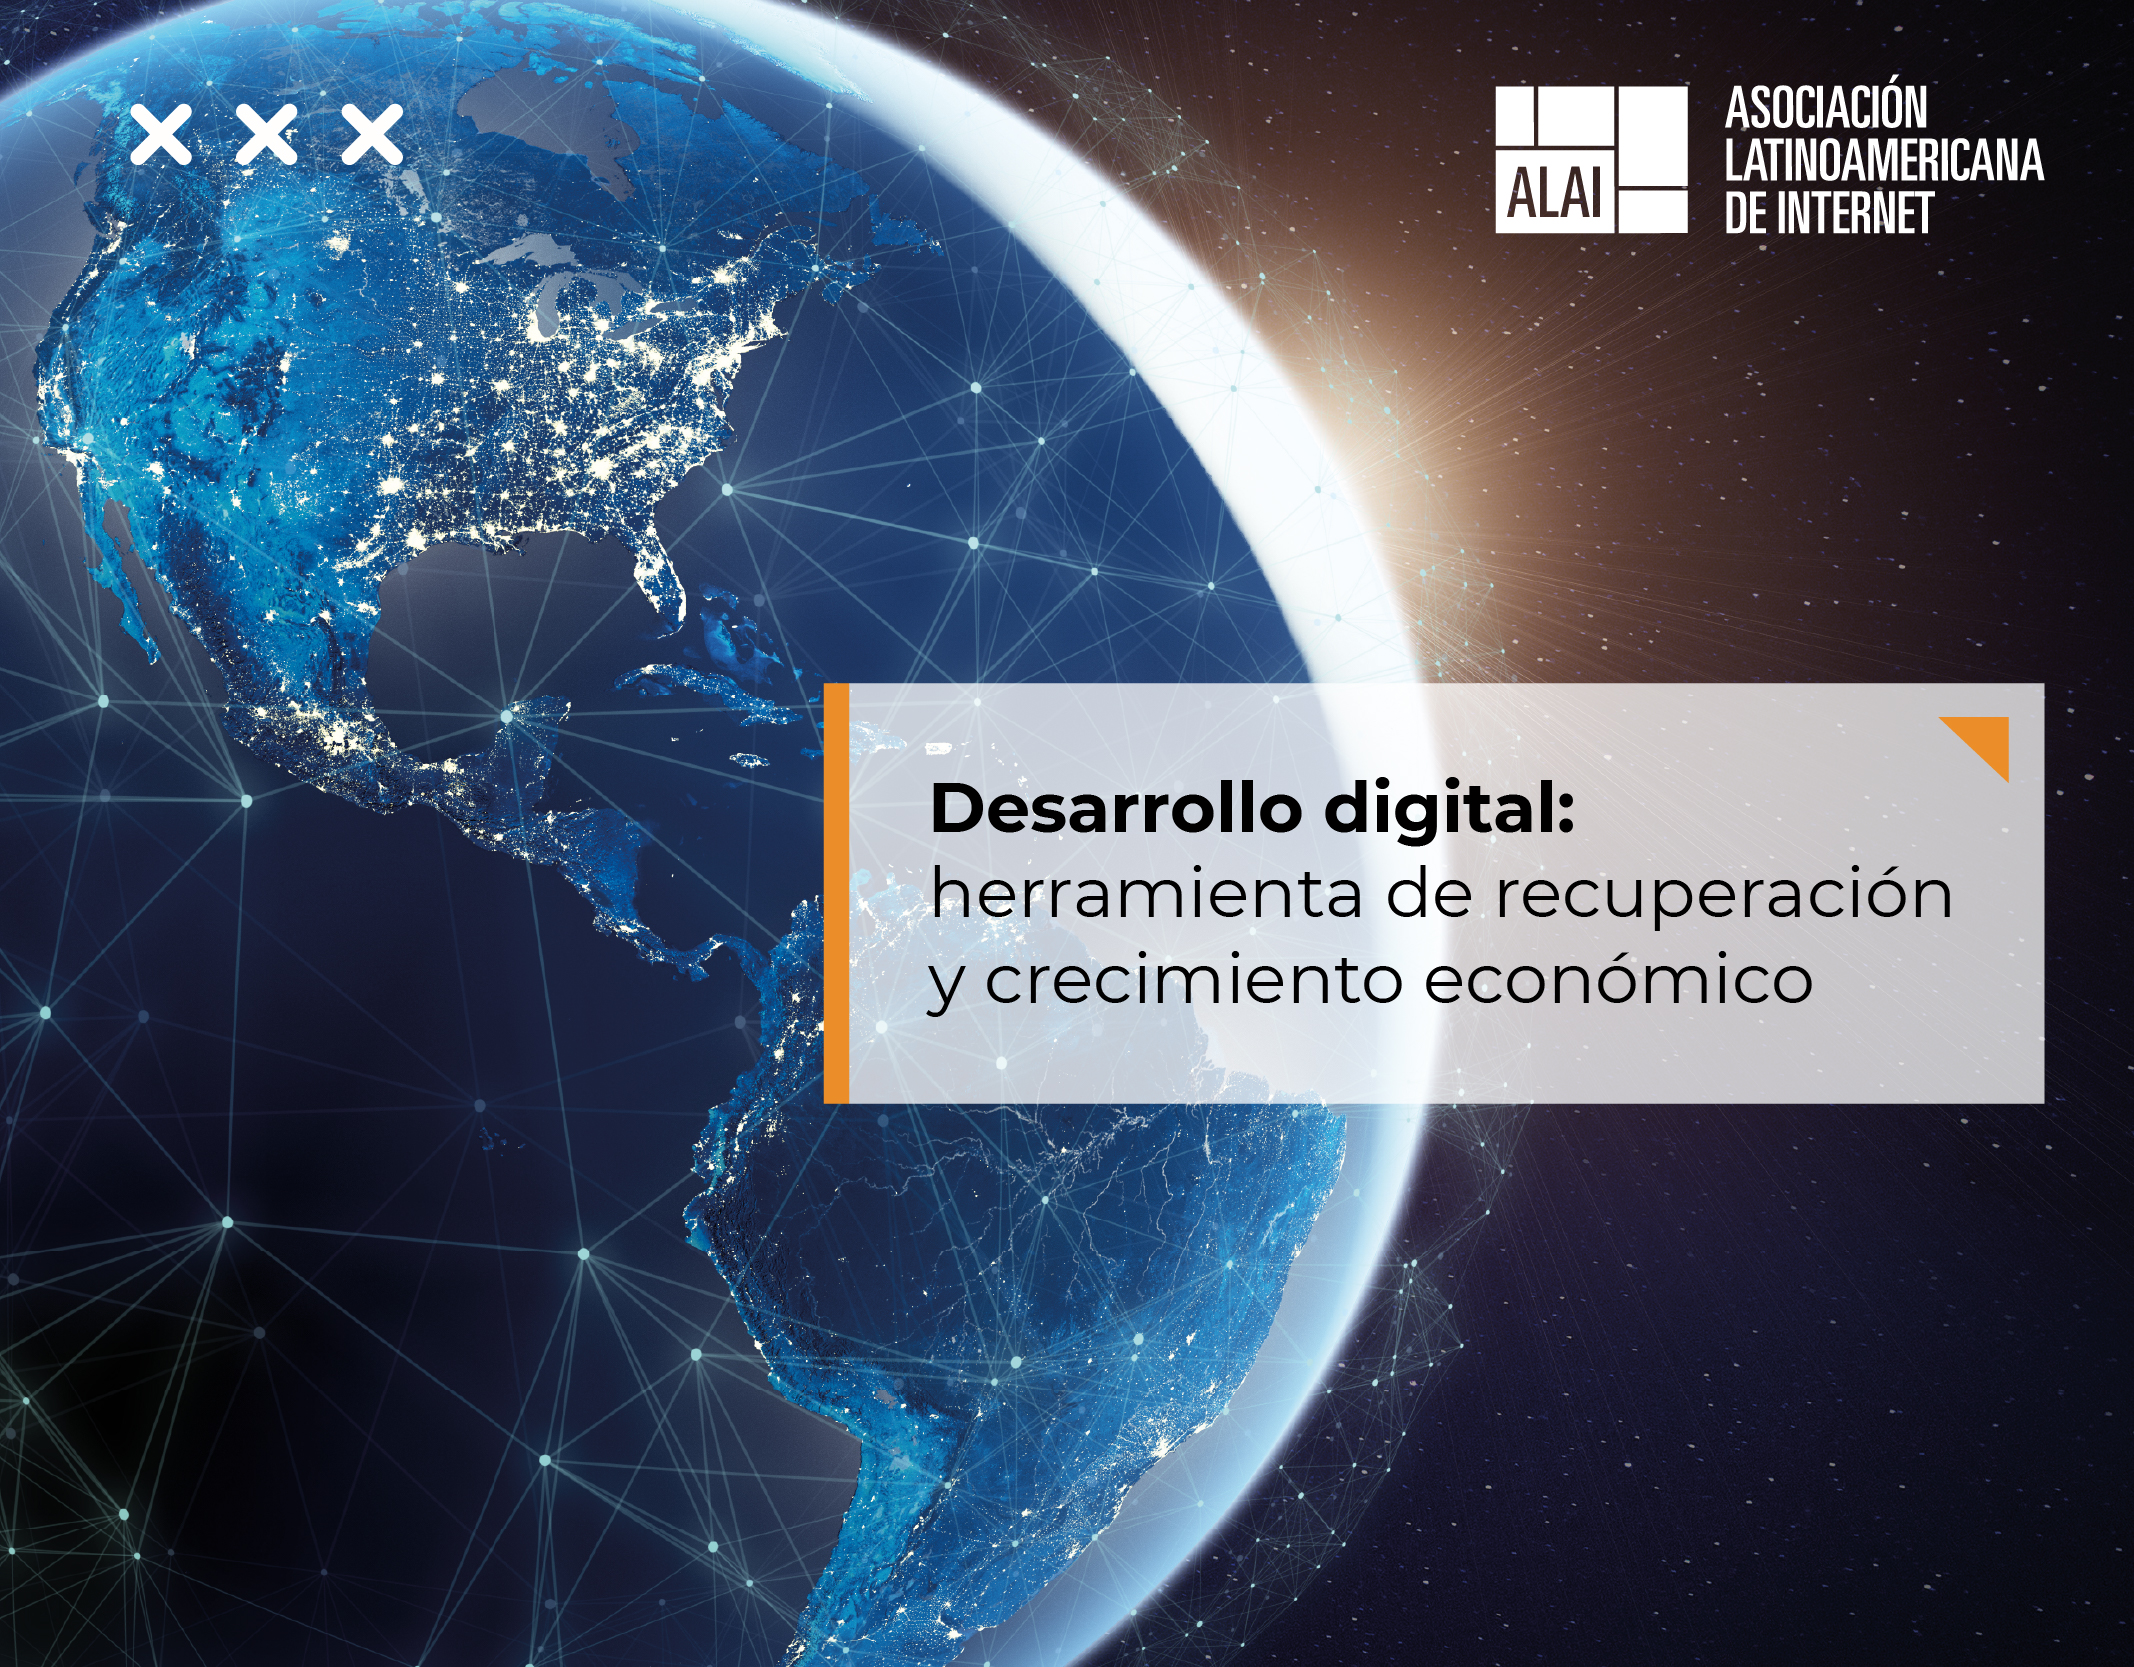 Desarrollo digital: herramienta de recuperación y crecimiento económico